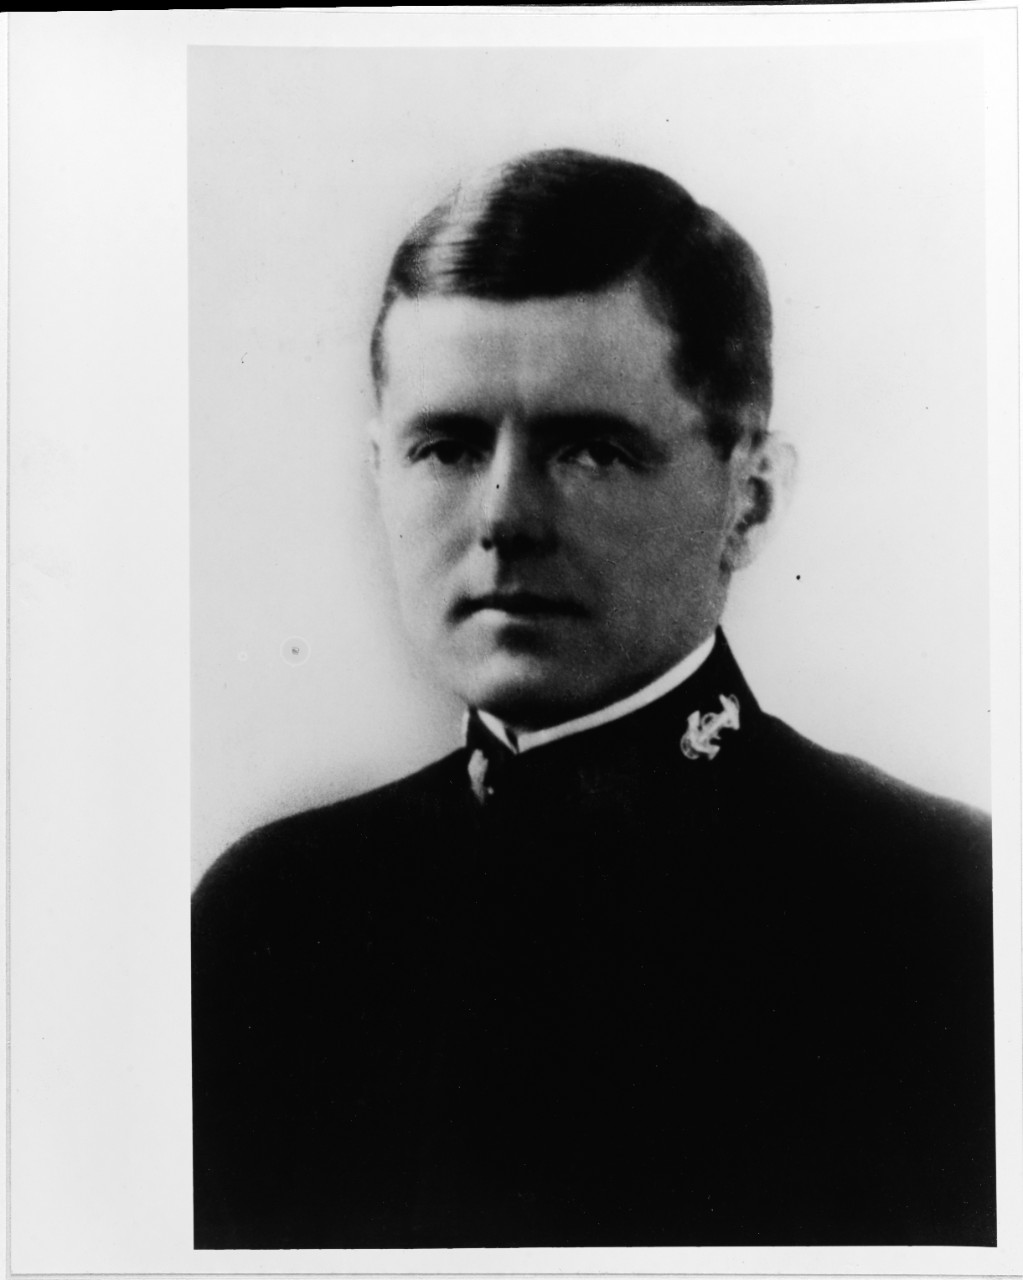 Commander Allan S. Farquhar, USN